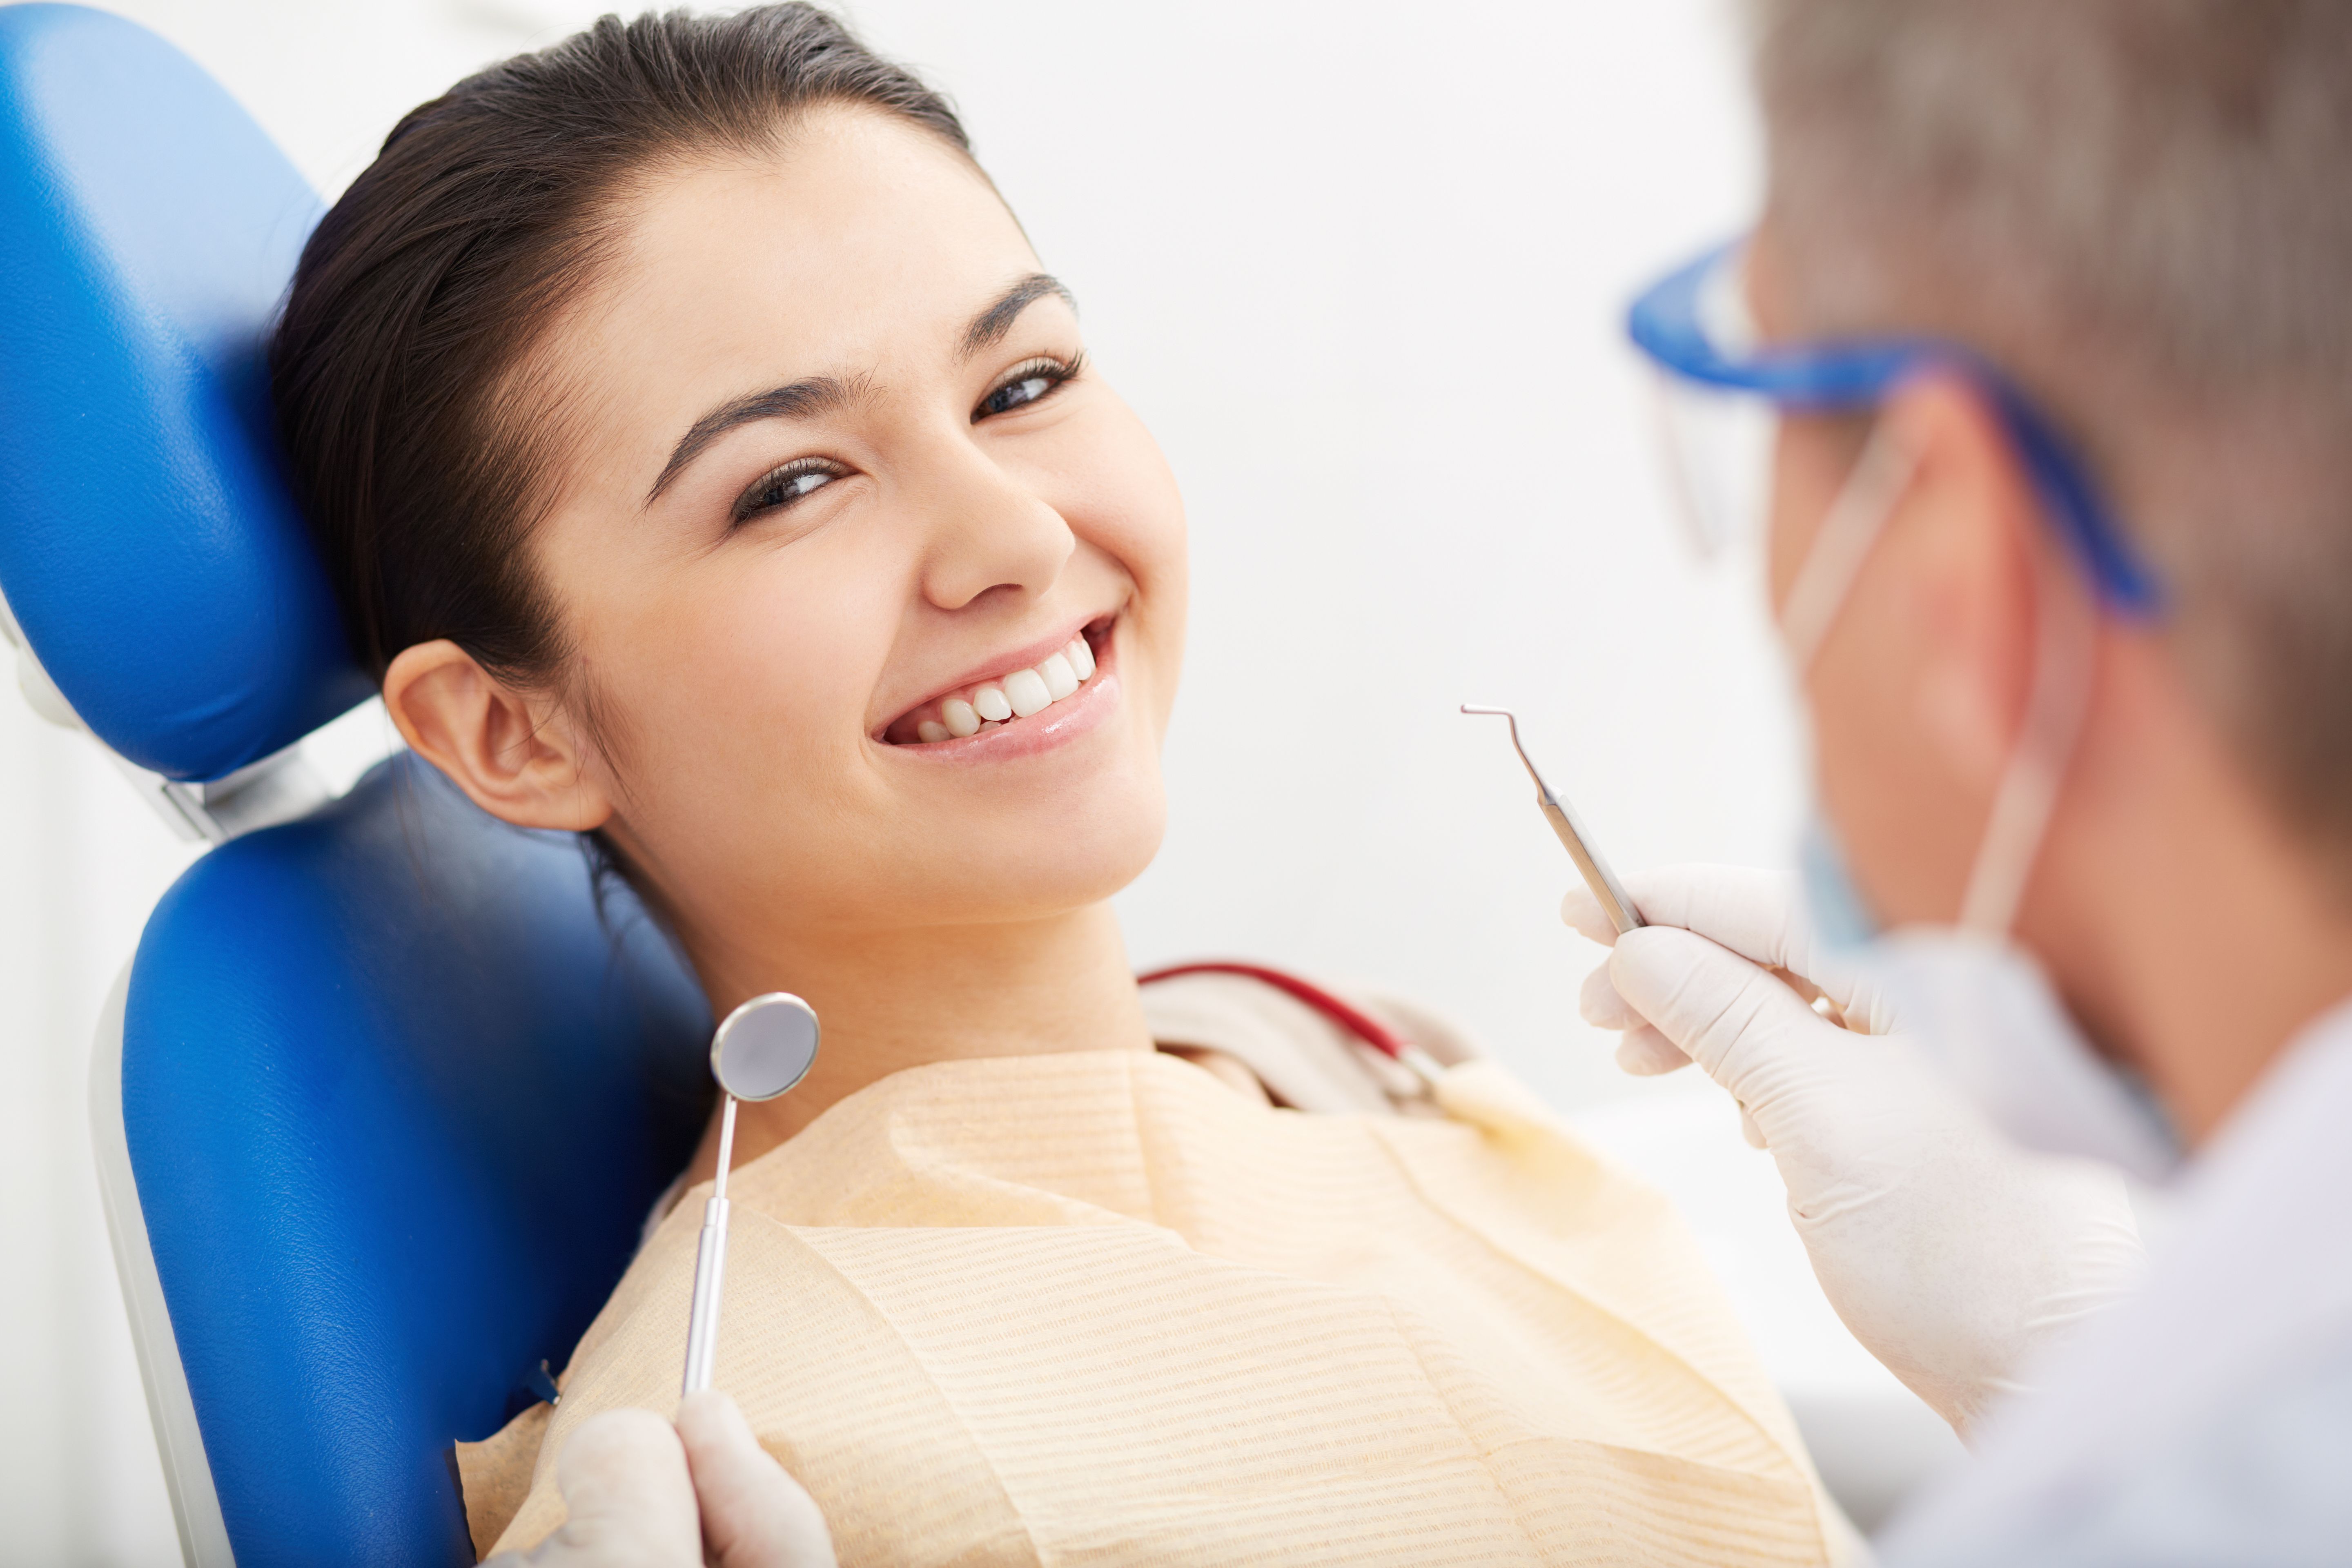 Odontología general: Tratamientos dentales de Sanadent }}